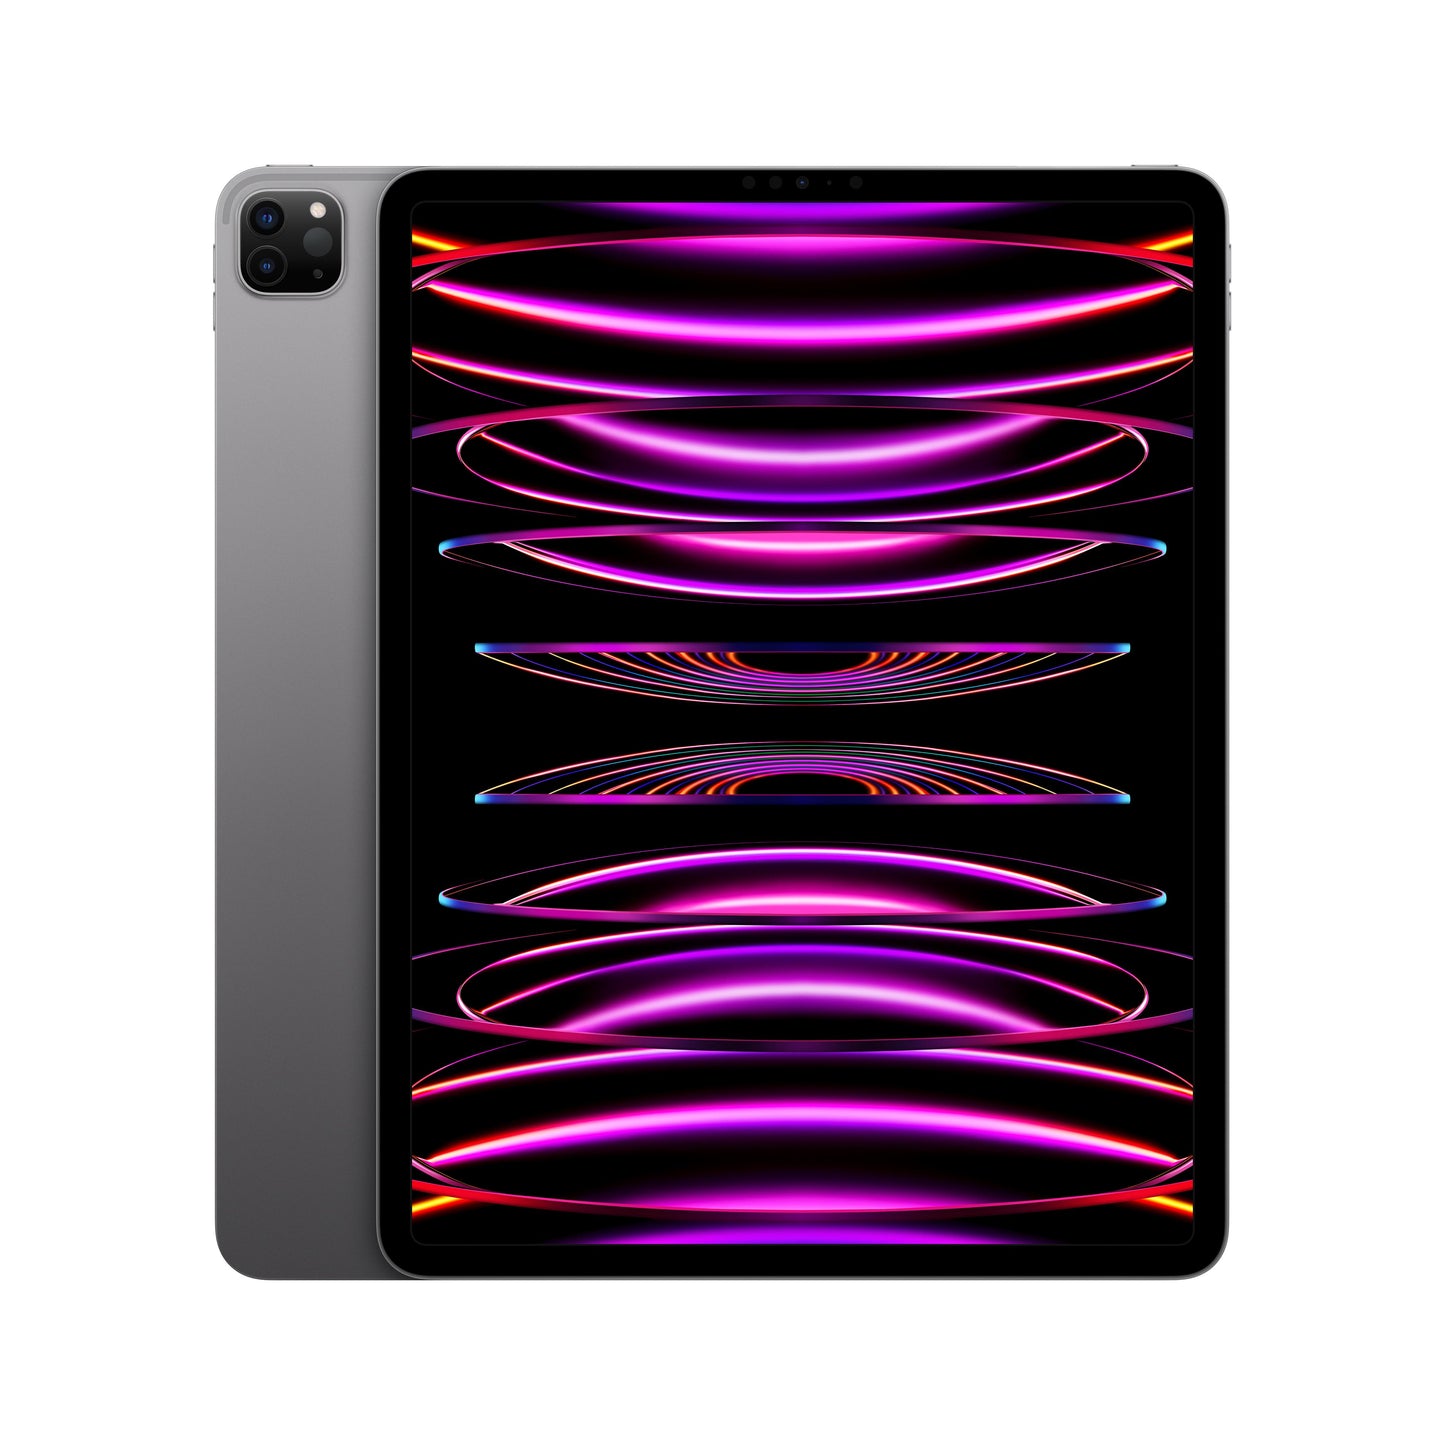 EOL 2022 iPad Pro 12,9 pouces, Wi-Fi, 128 Go - Gris sidéral (6e génération)